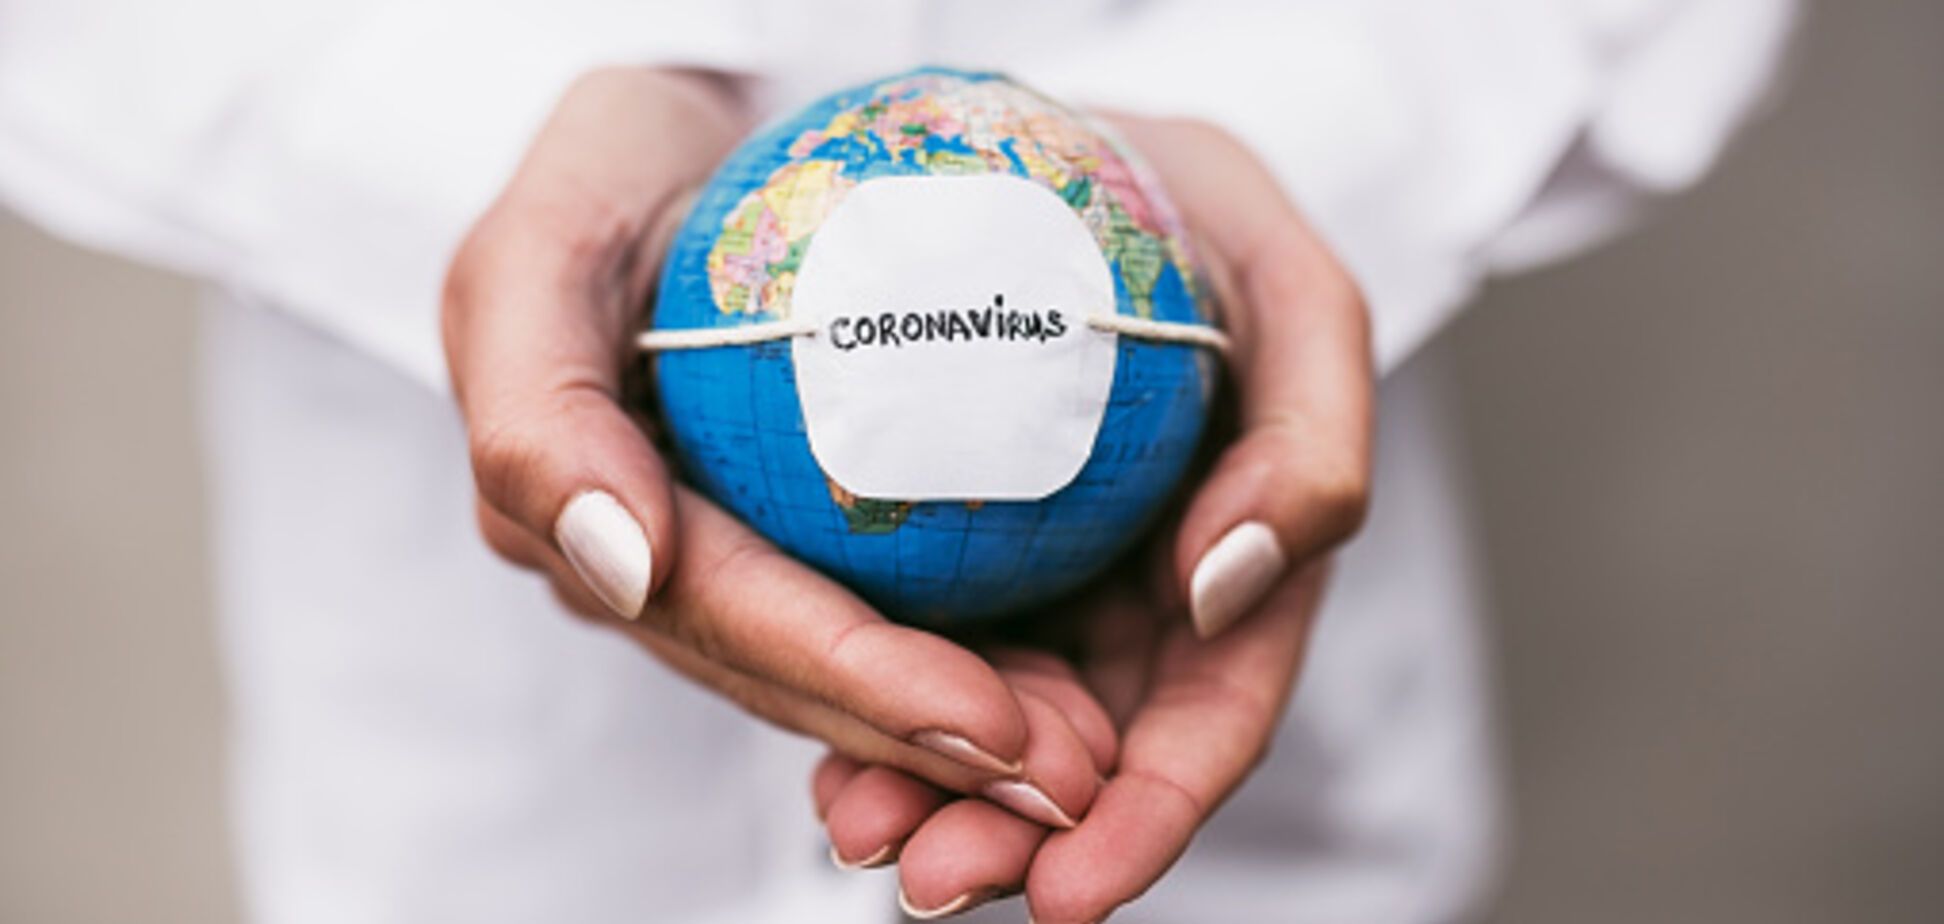 Бразилія може стати новим епіцентром COVID-19: статистика щодо коронавірусу на 1 червня. Постійно оновлюється